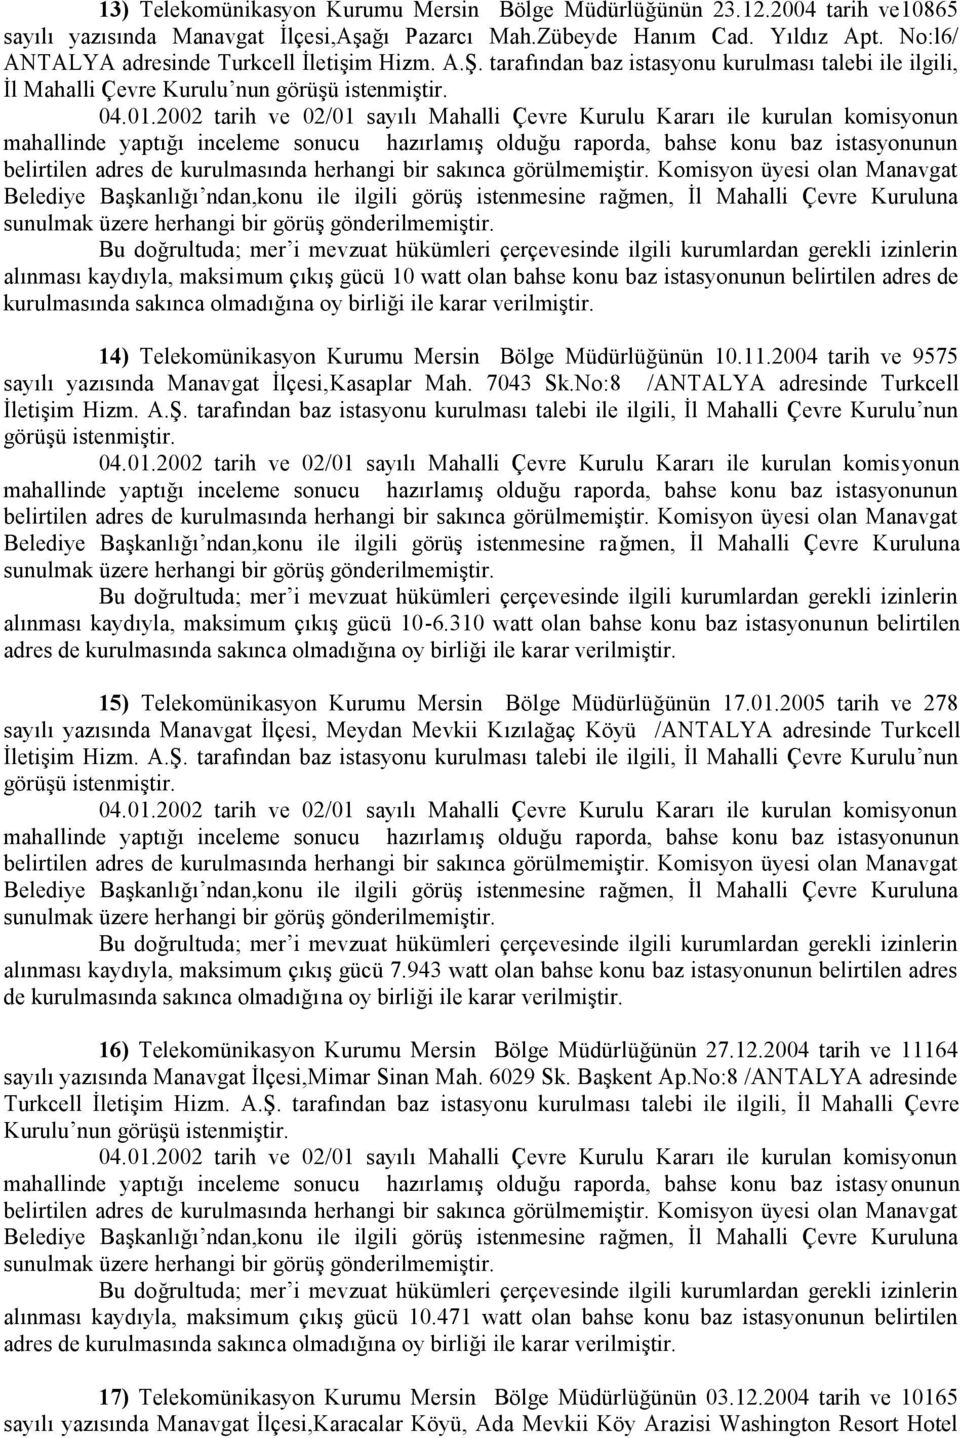 Komisyon üyesi olan Manavgat 14) Telekomünikasyon Kurumu Mersin Bölge Müdürlüğünün 10.11.2004 tarih ve 9575 sayılı yazısında Manavgat İlçesi,Kasaplar Mah. 7043 Sk.